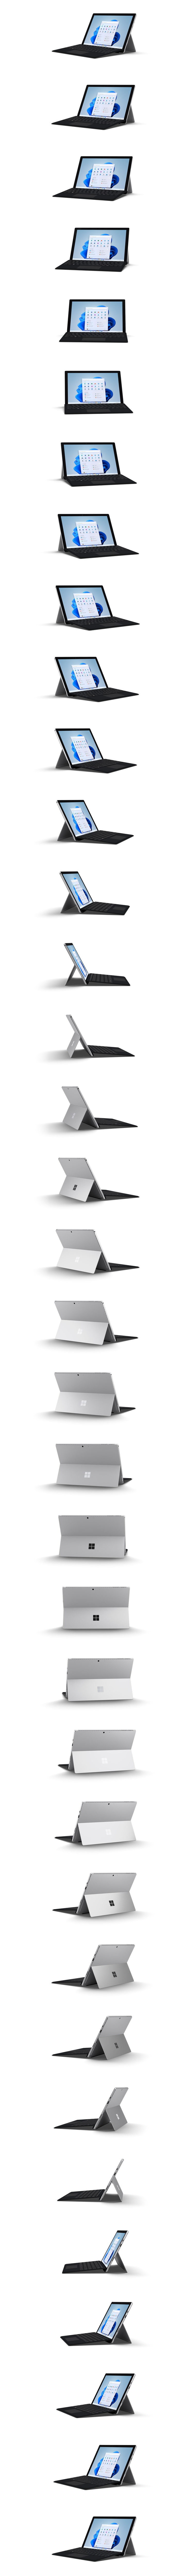 Image d’une Surface Pro 7+ dans une rotation de 360 degrés.